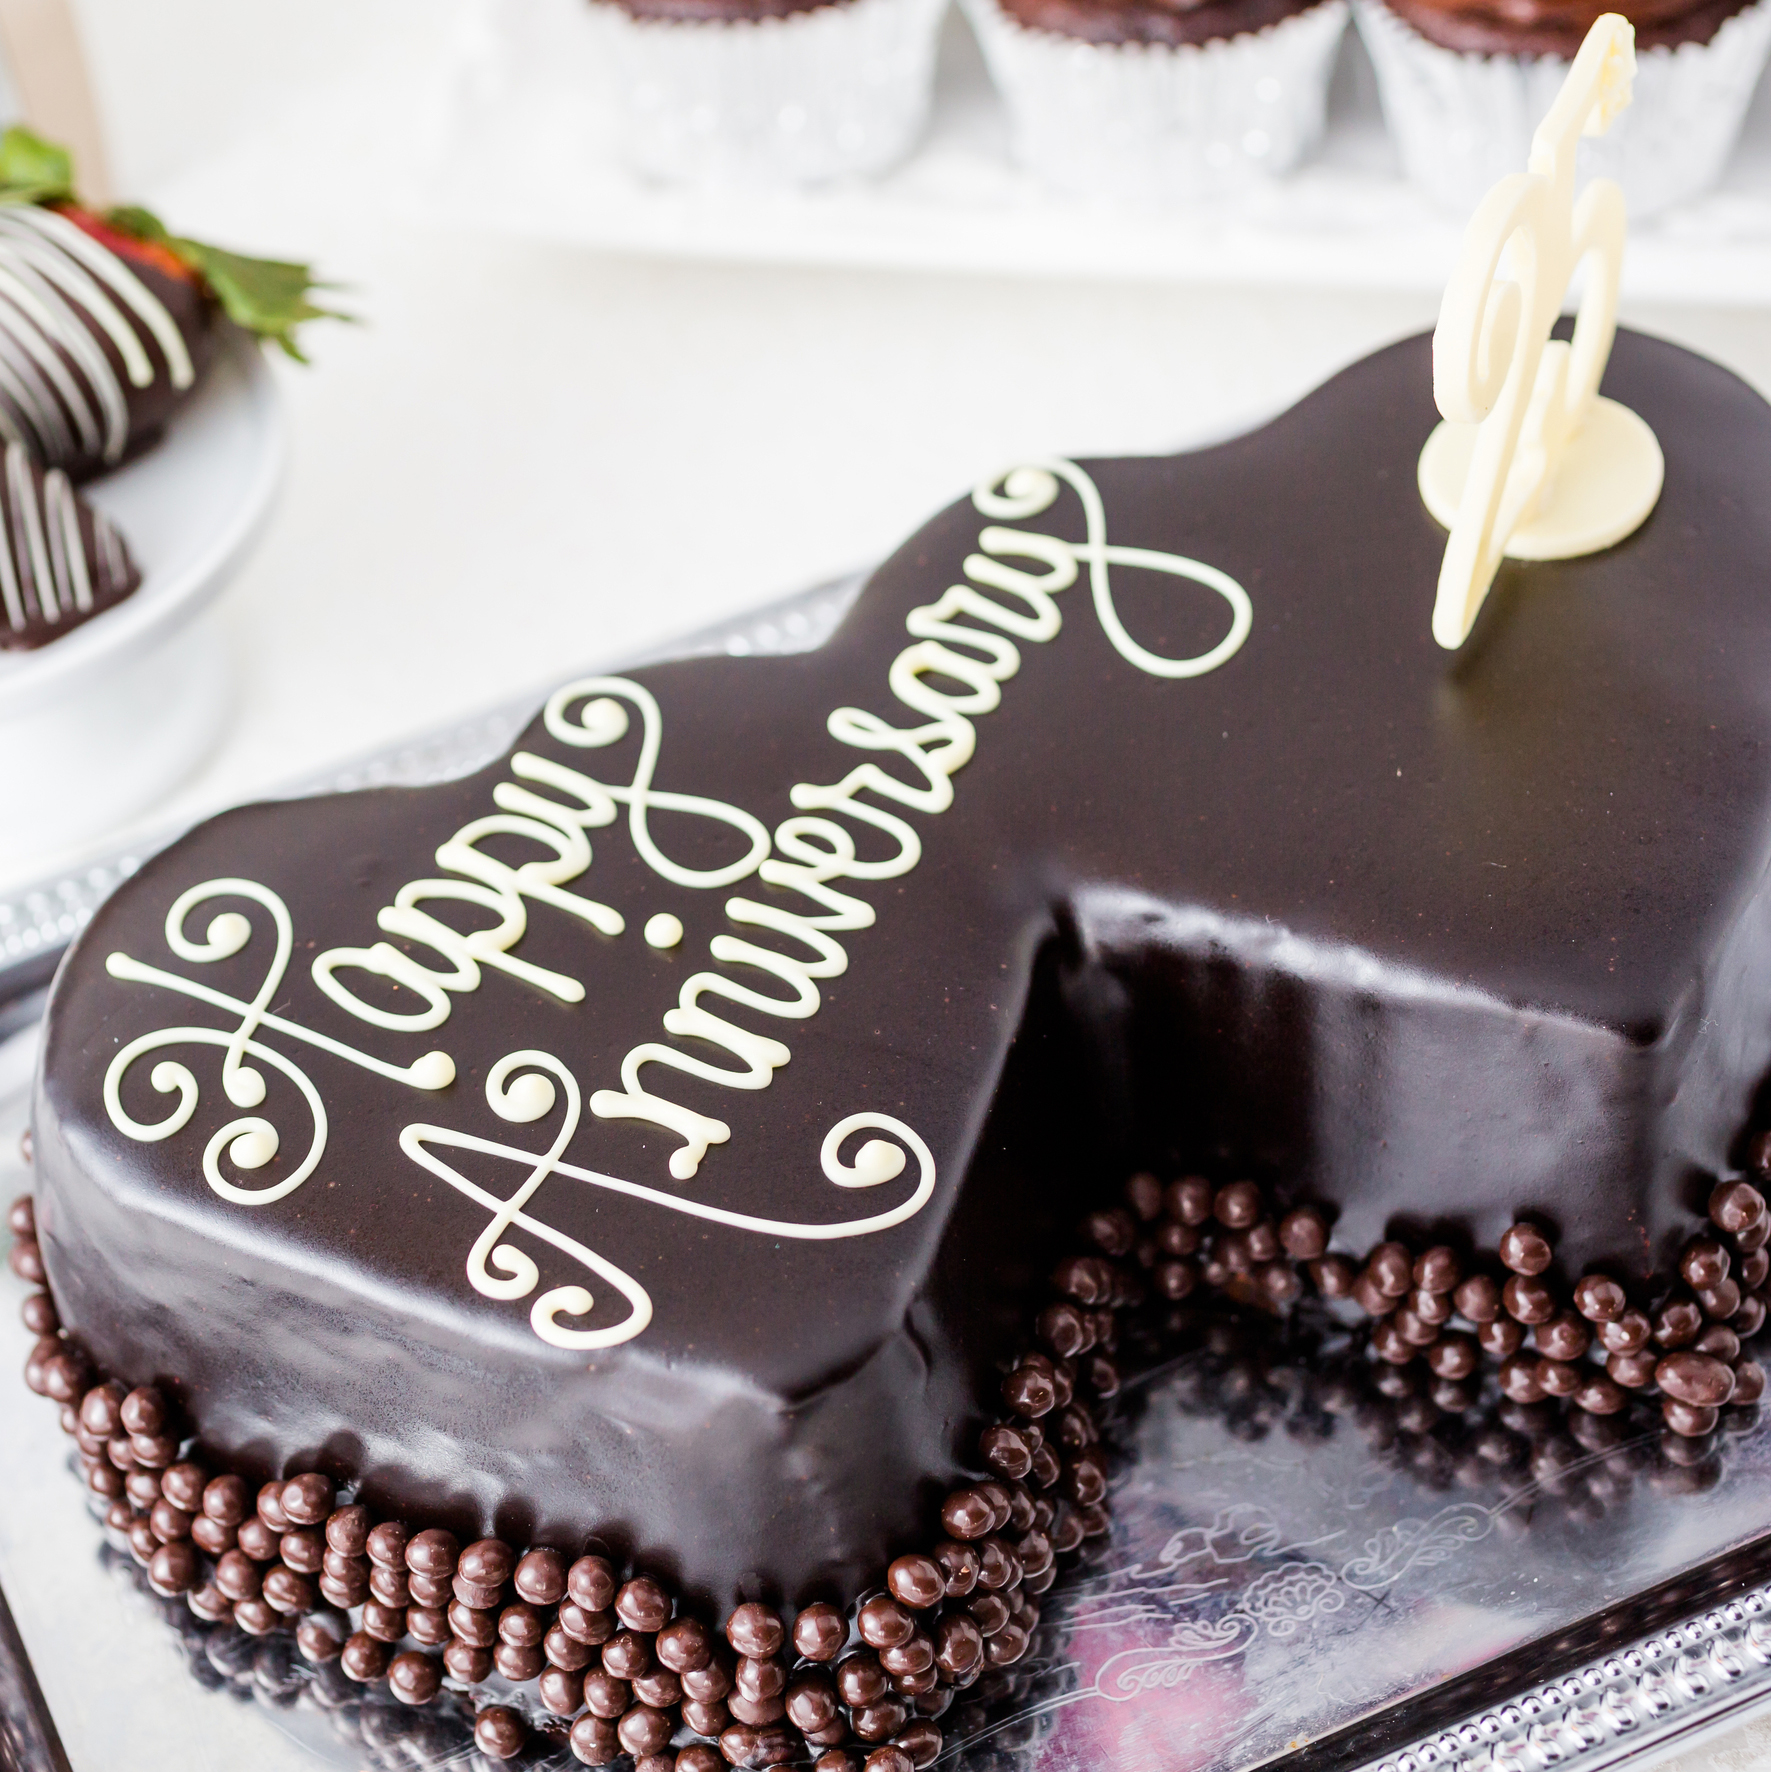 25th Anniversary chocolate cake